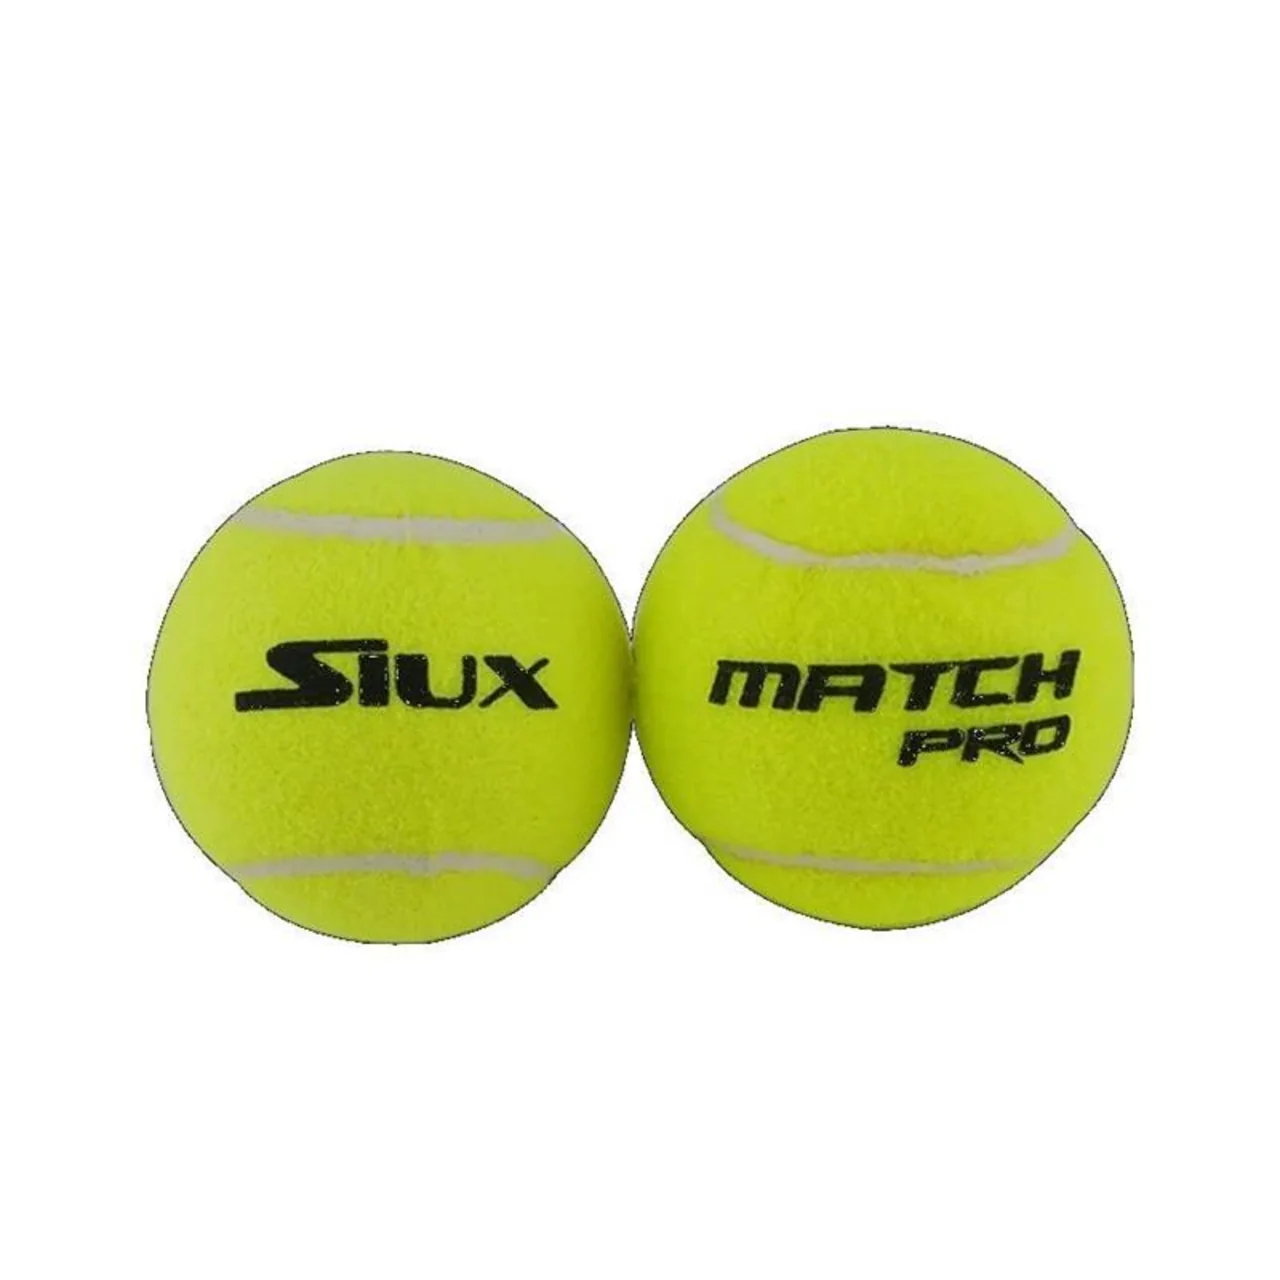 Siux Match Pro 24 rør